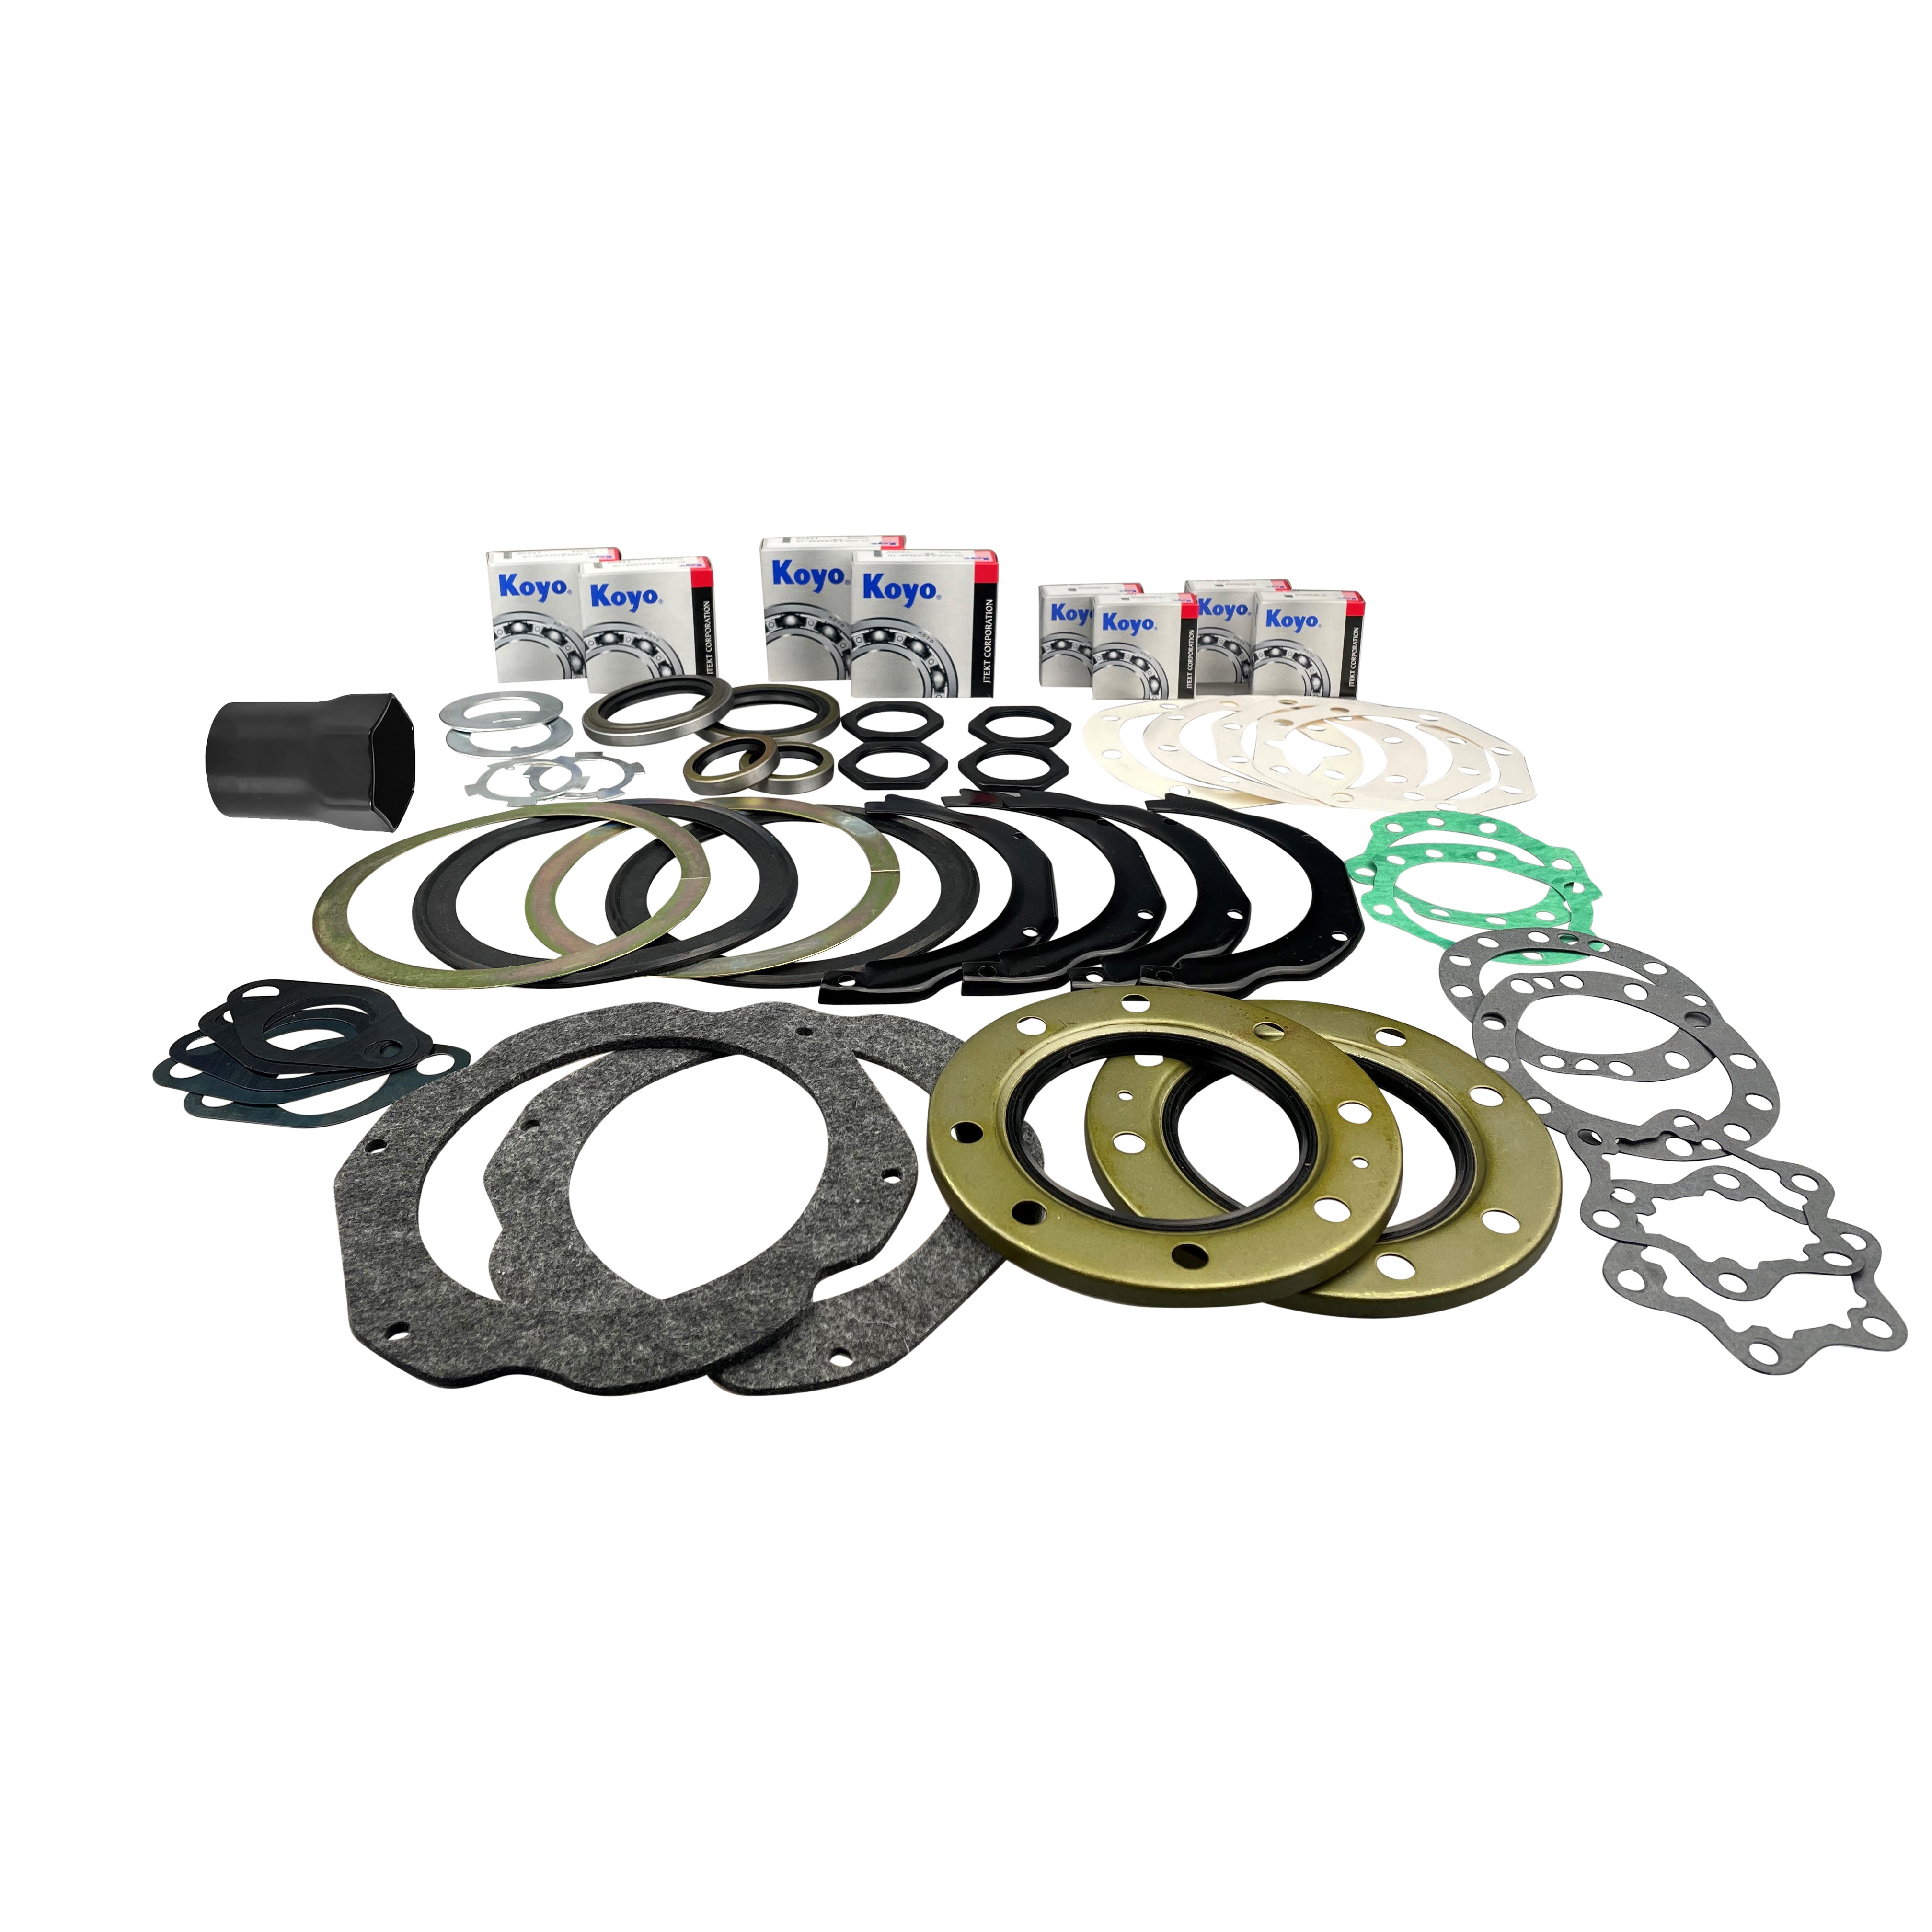 Swivel Hub Wheel Bearing Kit For Toyota Landcruiser 76 78 79 80 105 Series